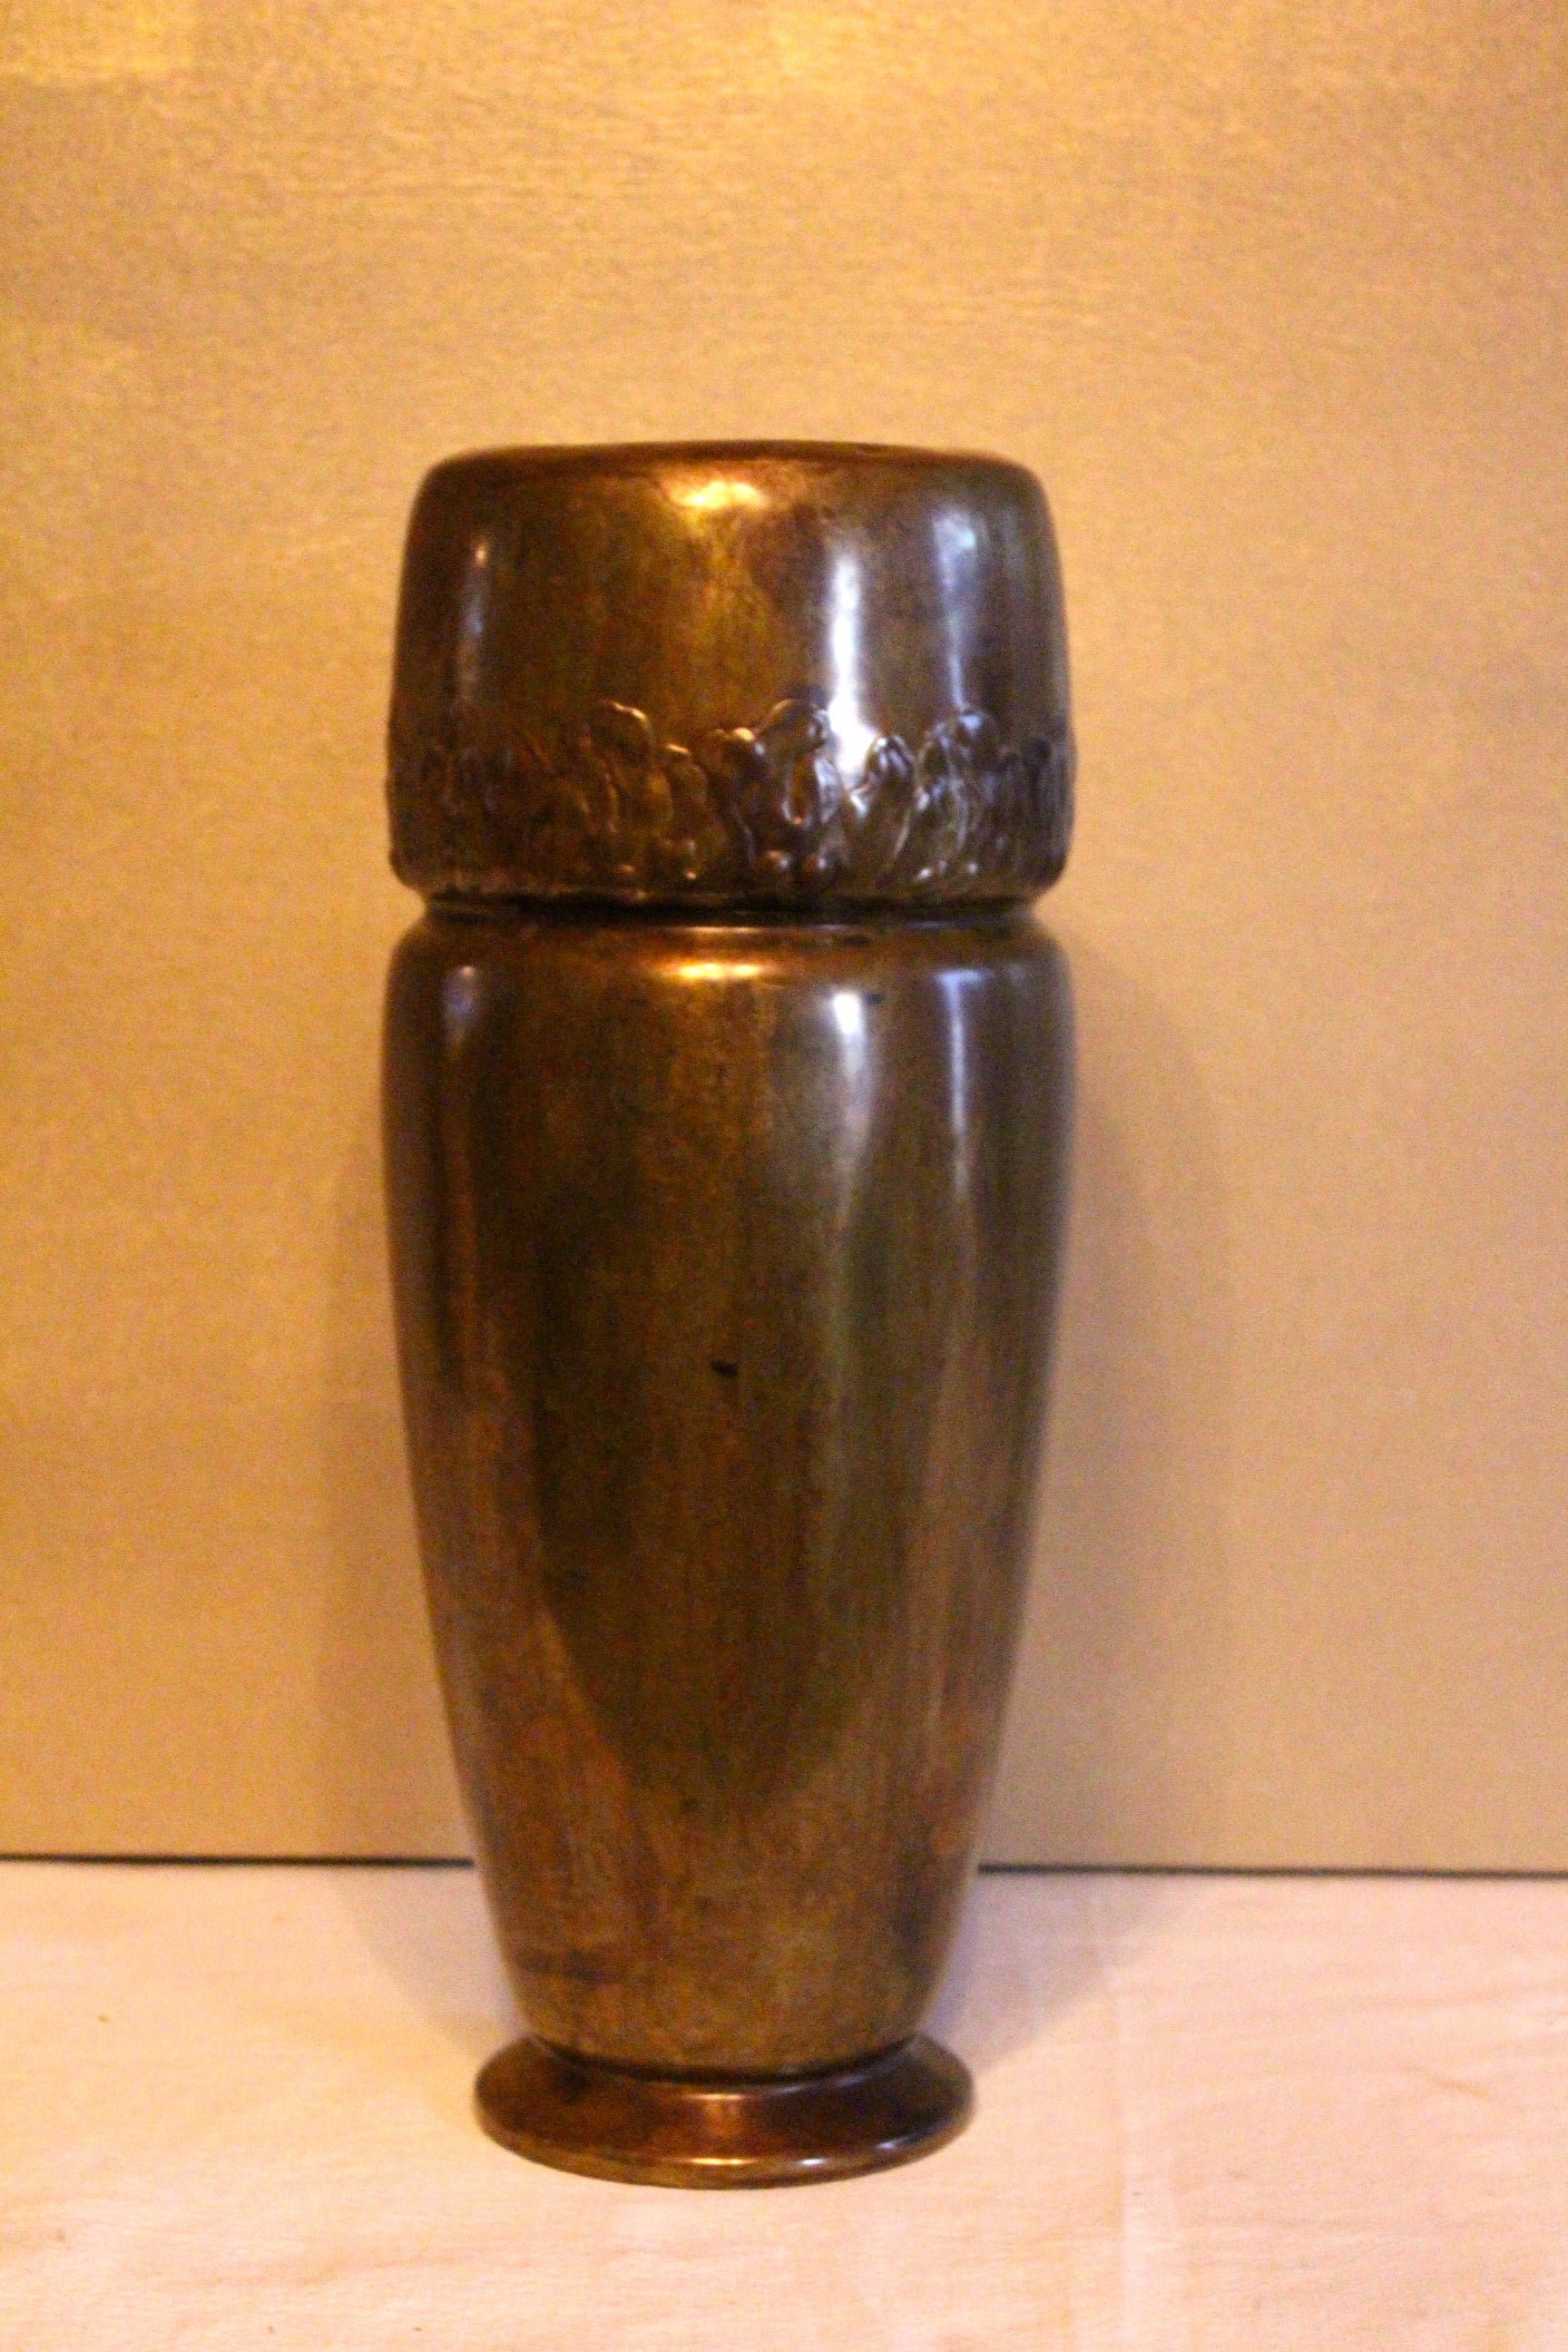 Vase monumental en laiton avec détail - Cette pièce est inscrite sur un côté en très petit texte - et très difficile à lire avec la patine. 

Superbe patine et détails en laiton.